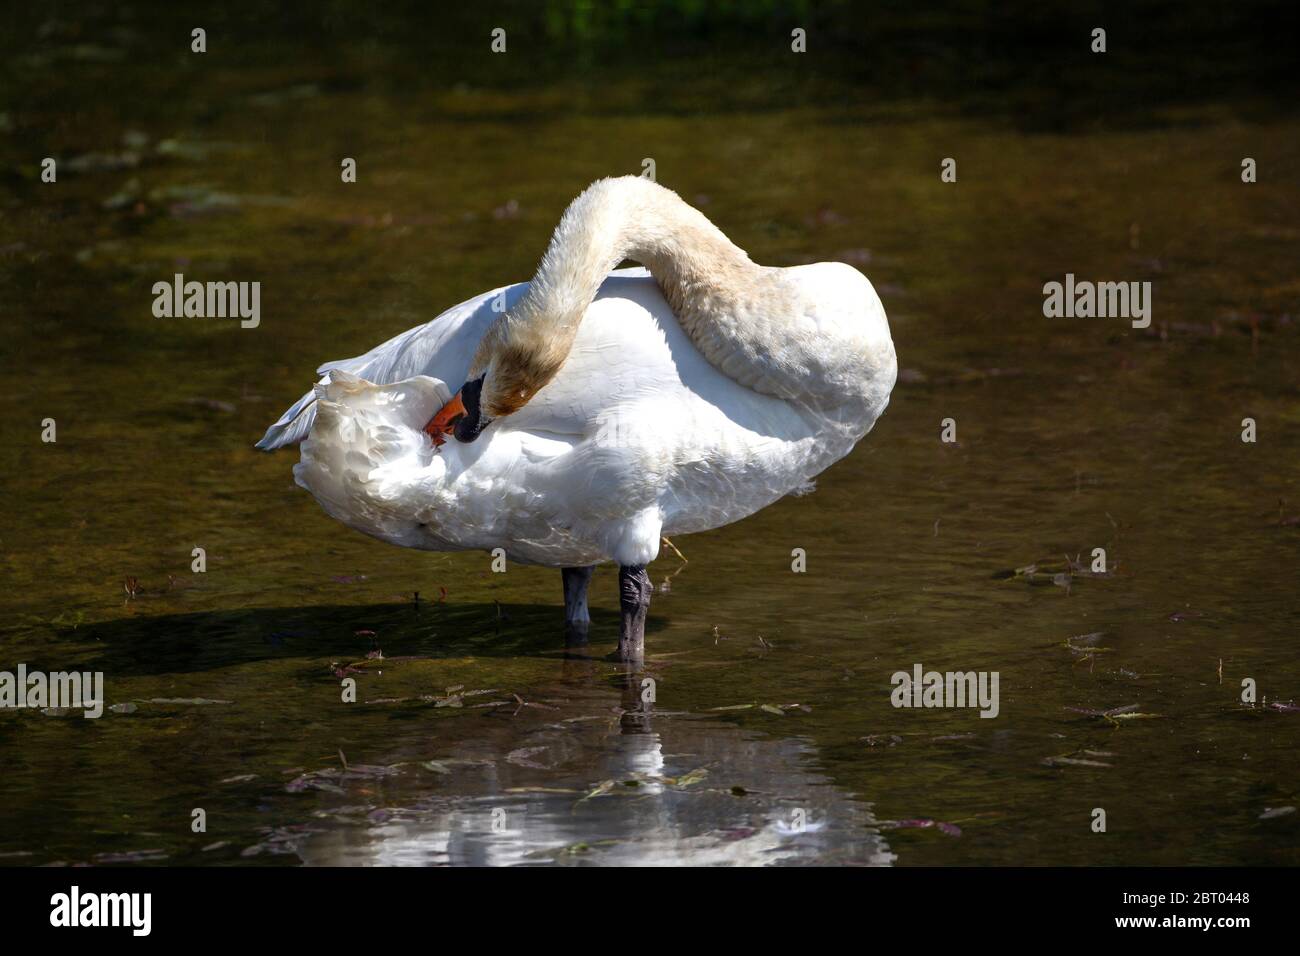 Single Mute Swan Cygnus colore nel profilo preening le sue piume su uno sfondo scuro Foto Stock